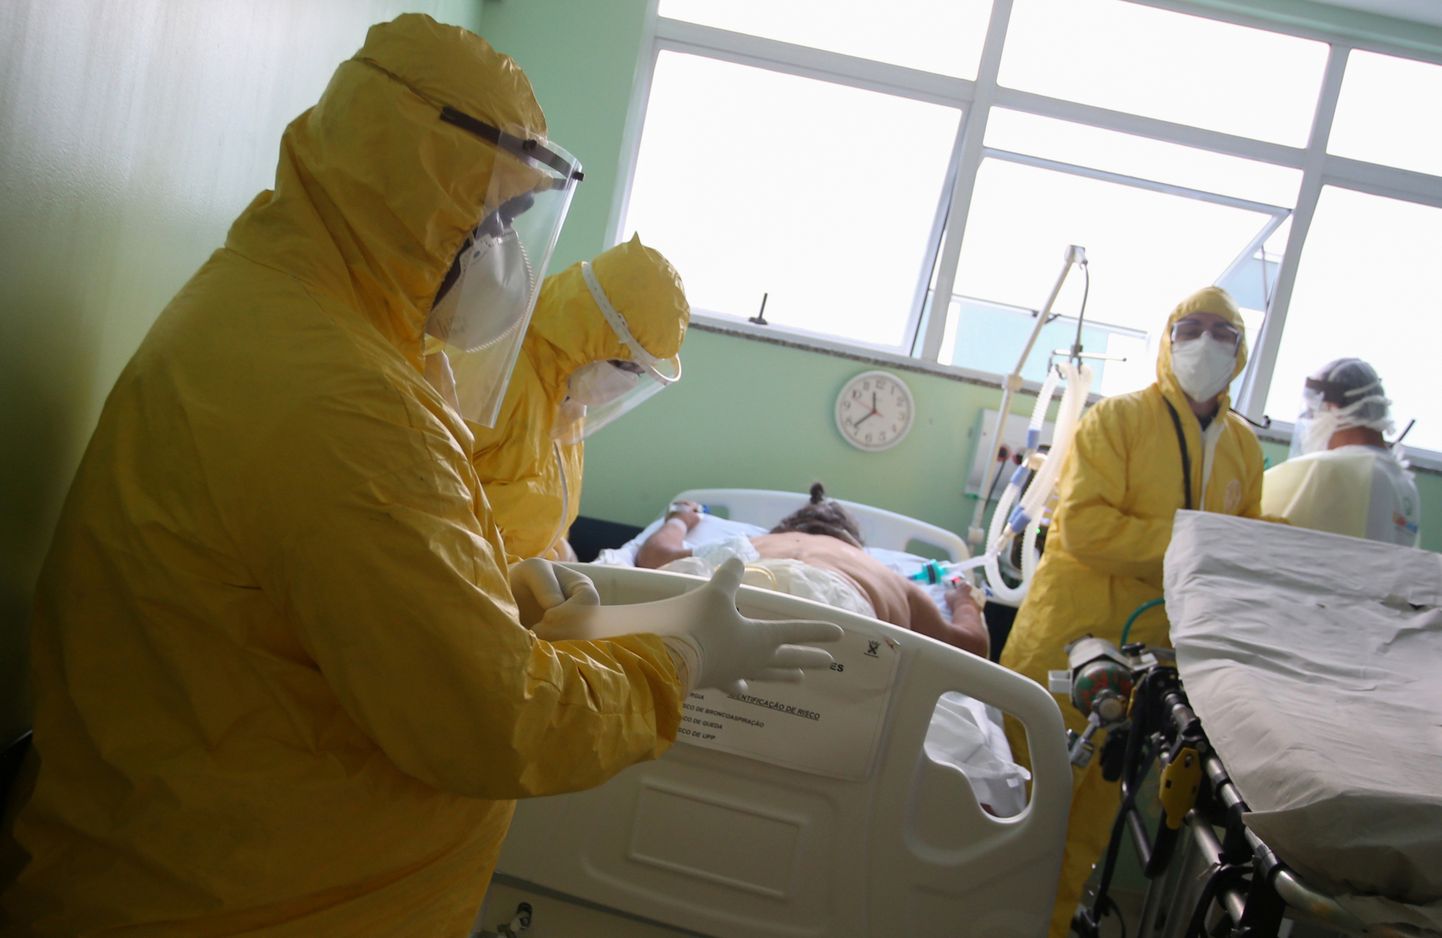 Бразилия стала второй страной в мире после США по числу заразившихся коронавирусом.